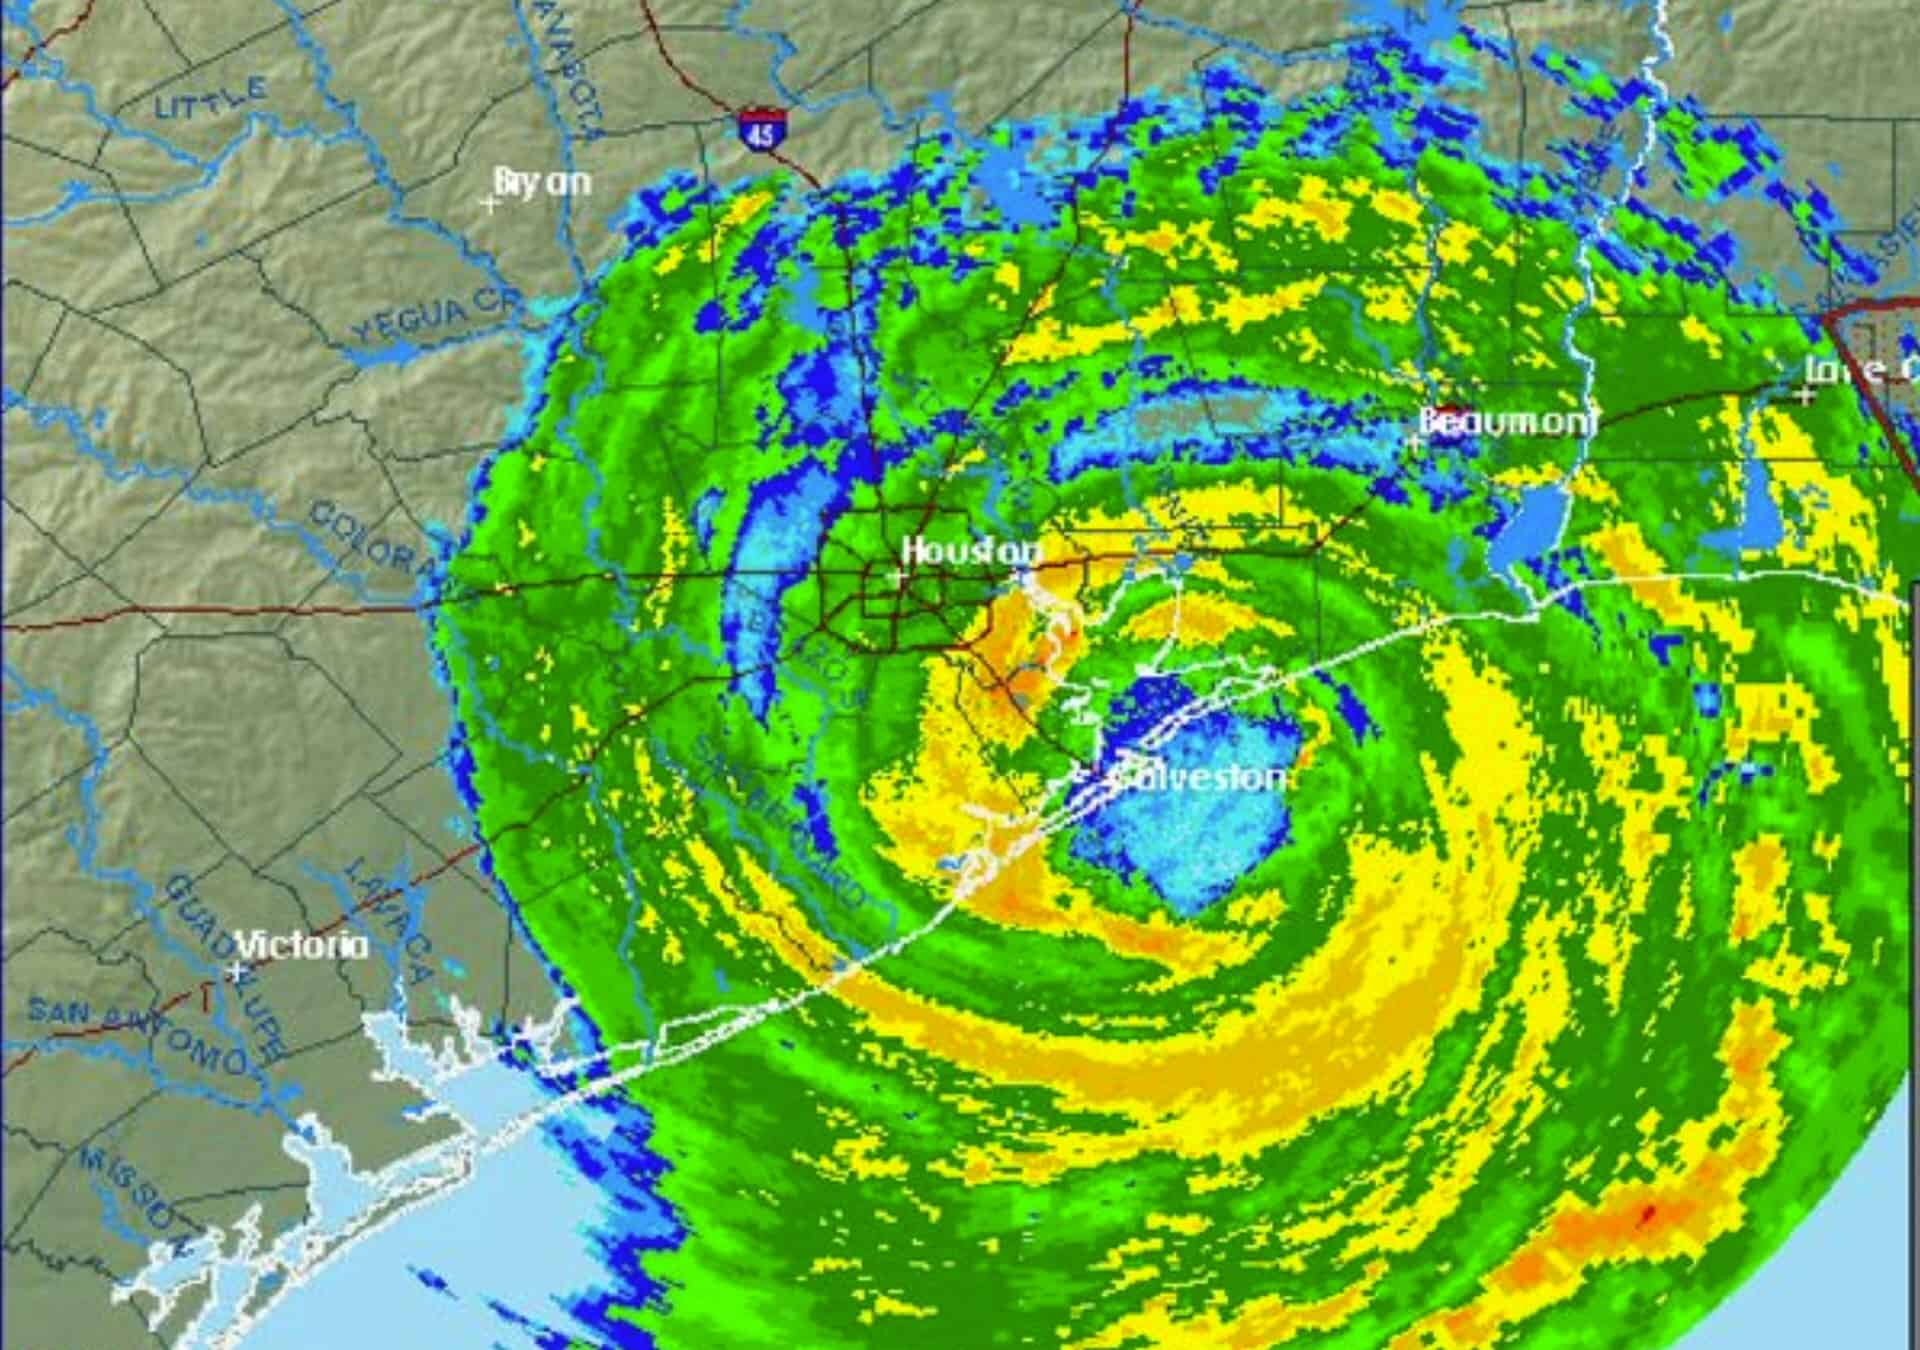 Preparing for Hurricane Season in Houston